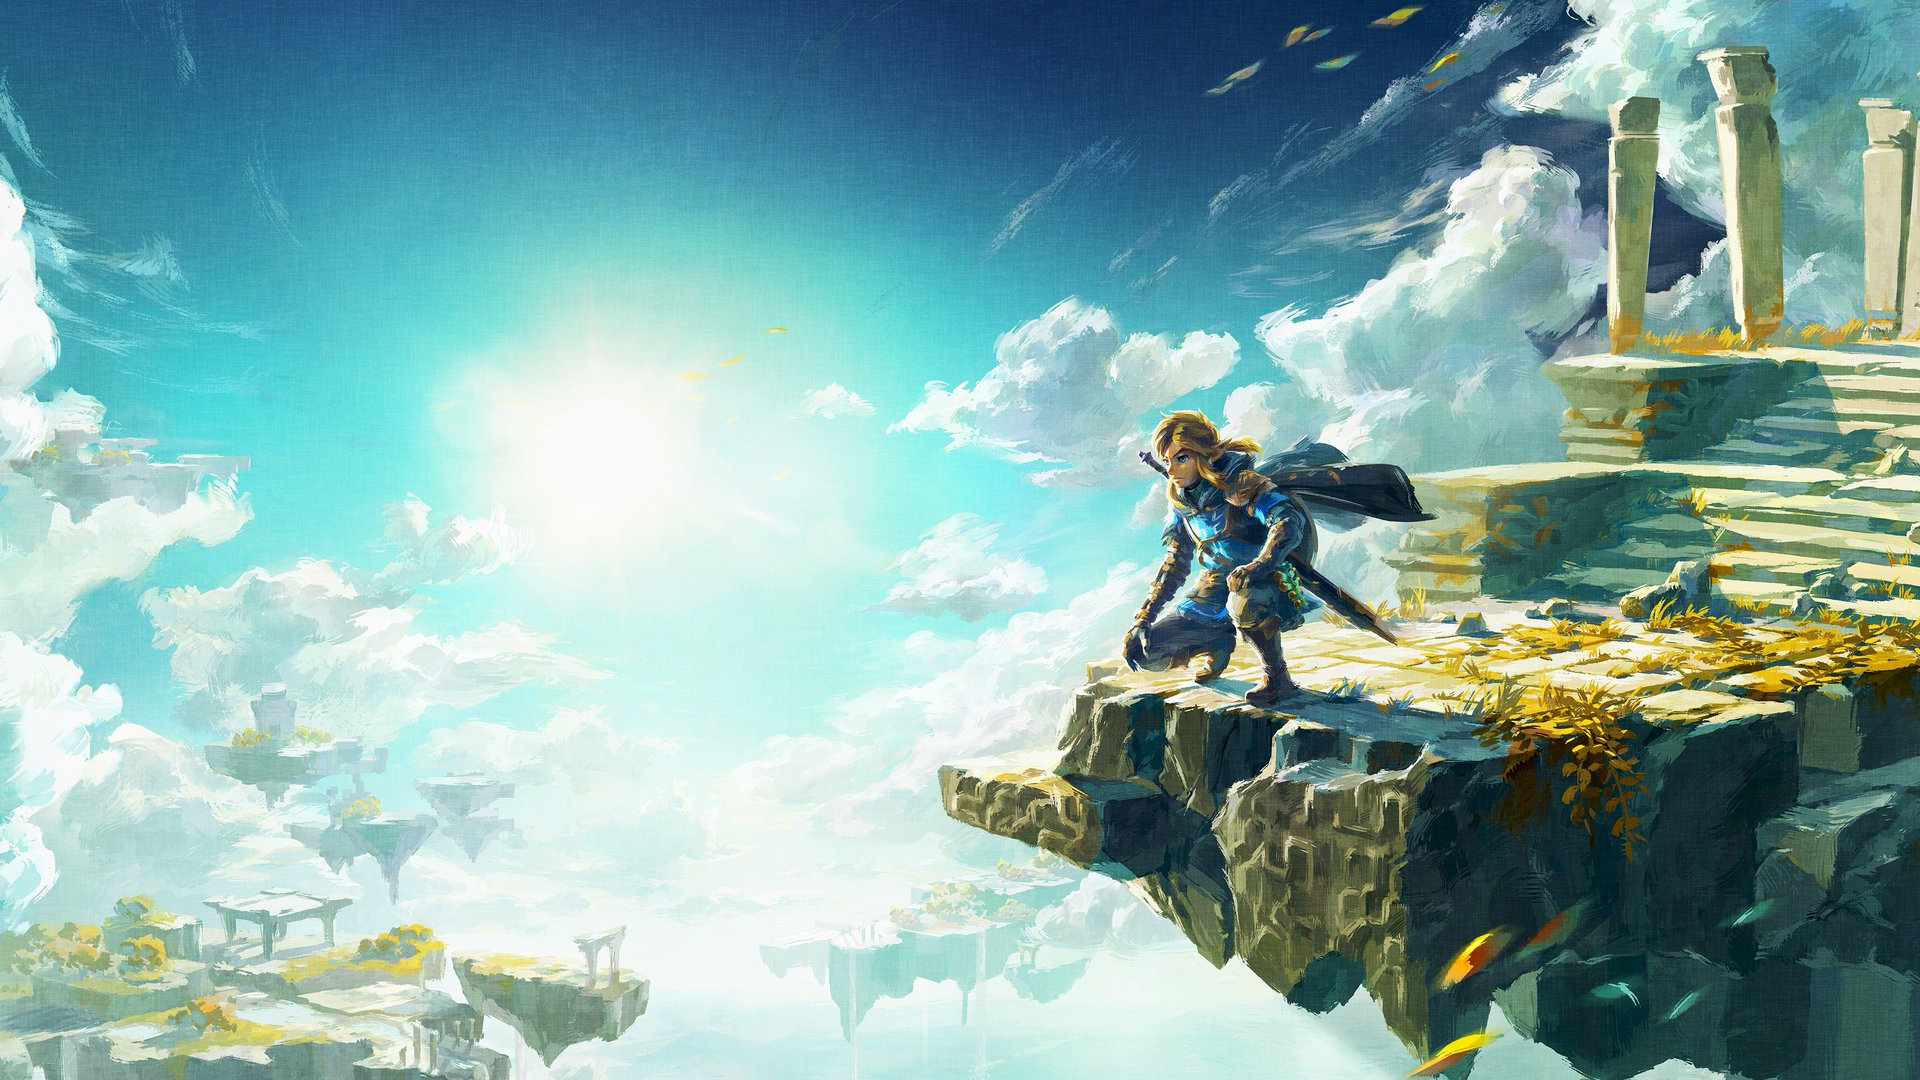 Nintendo Switch Versão OLED - Zelda: Tears of the Kingdom